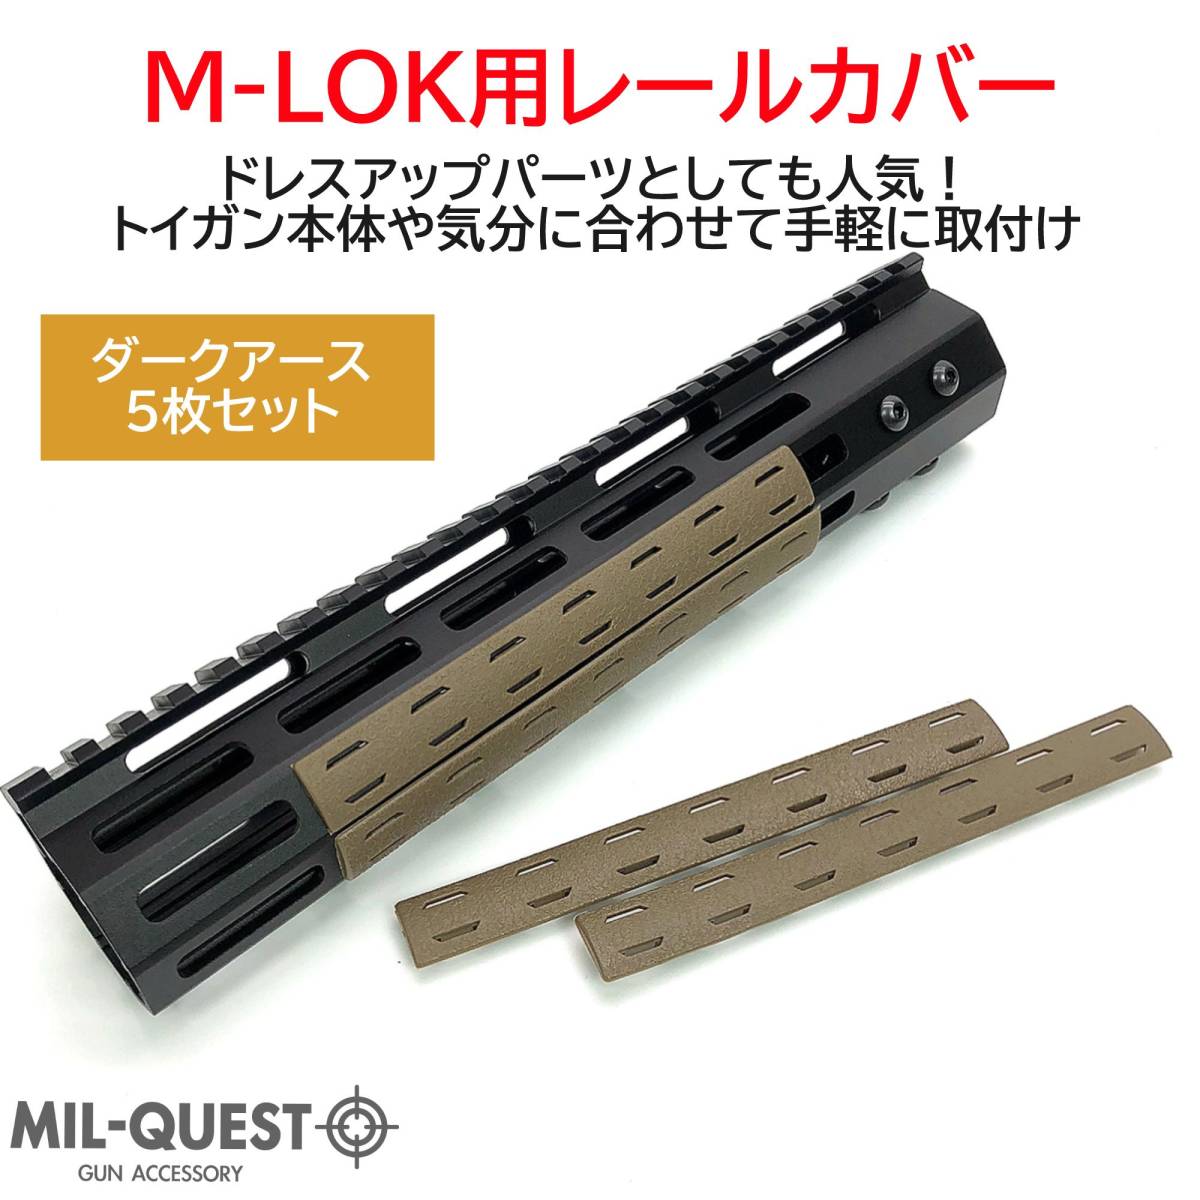 BCMタイプ M-LOK専用 レールパネル 5枚セット 樹脂製 ダークアース(タンカラー)TAN Mロック エムロック MILQUESTミルクエスト レールカバー